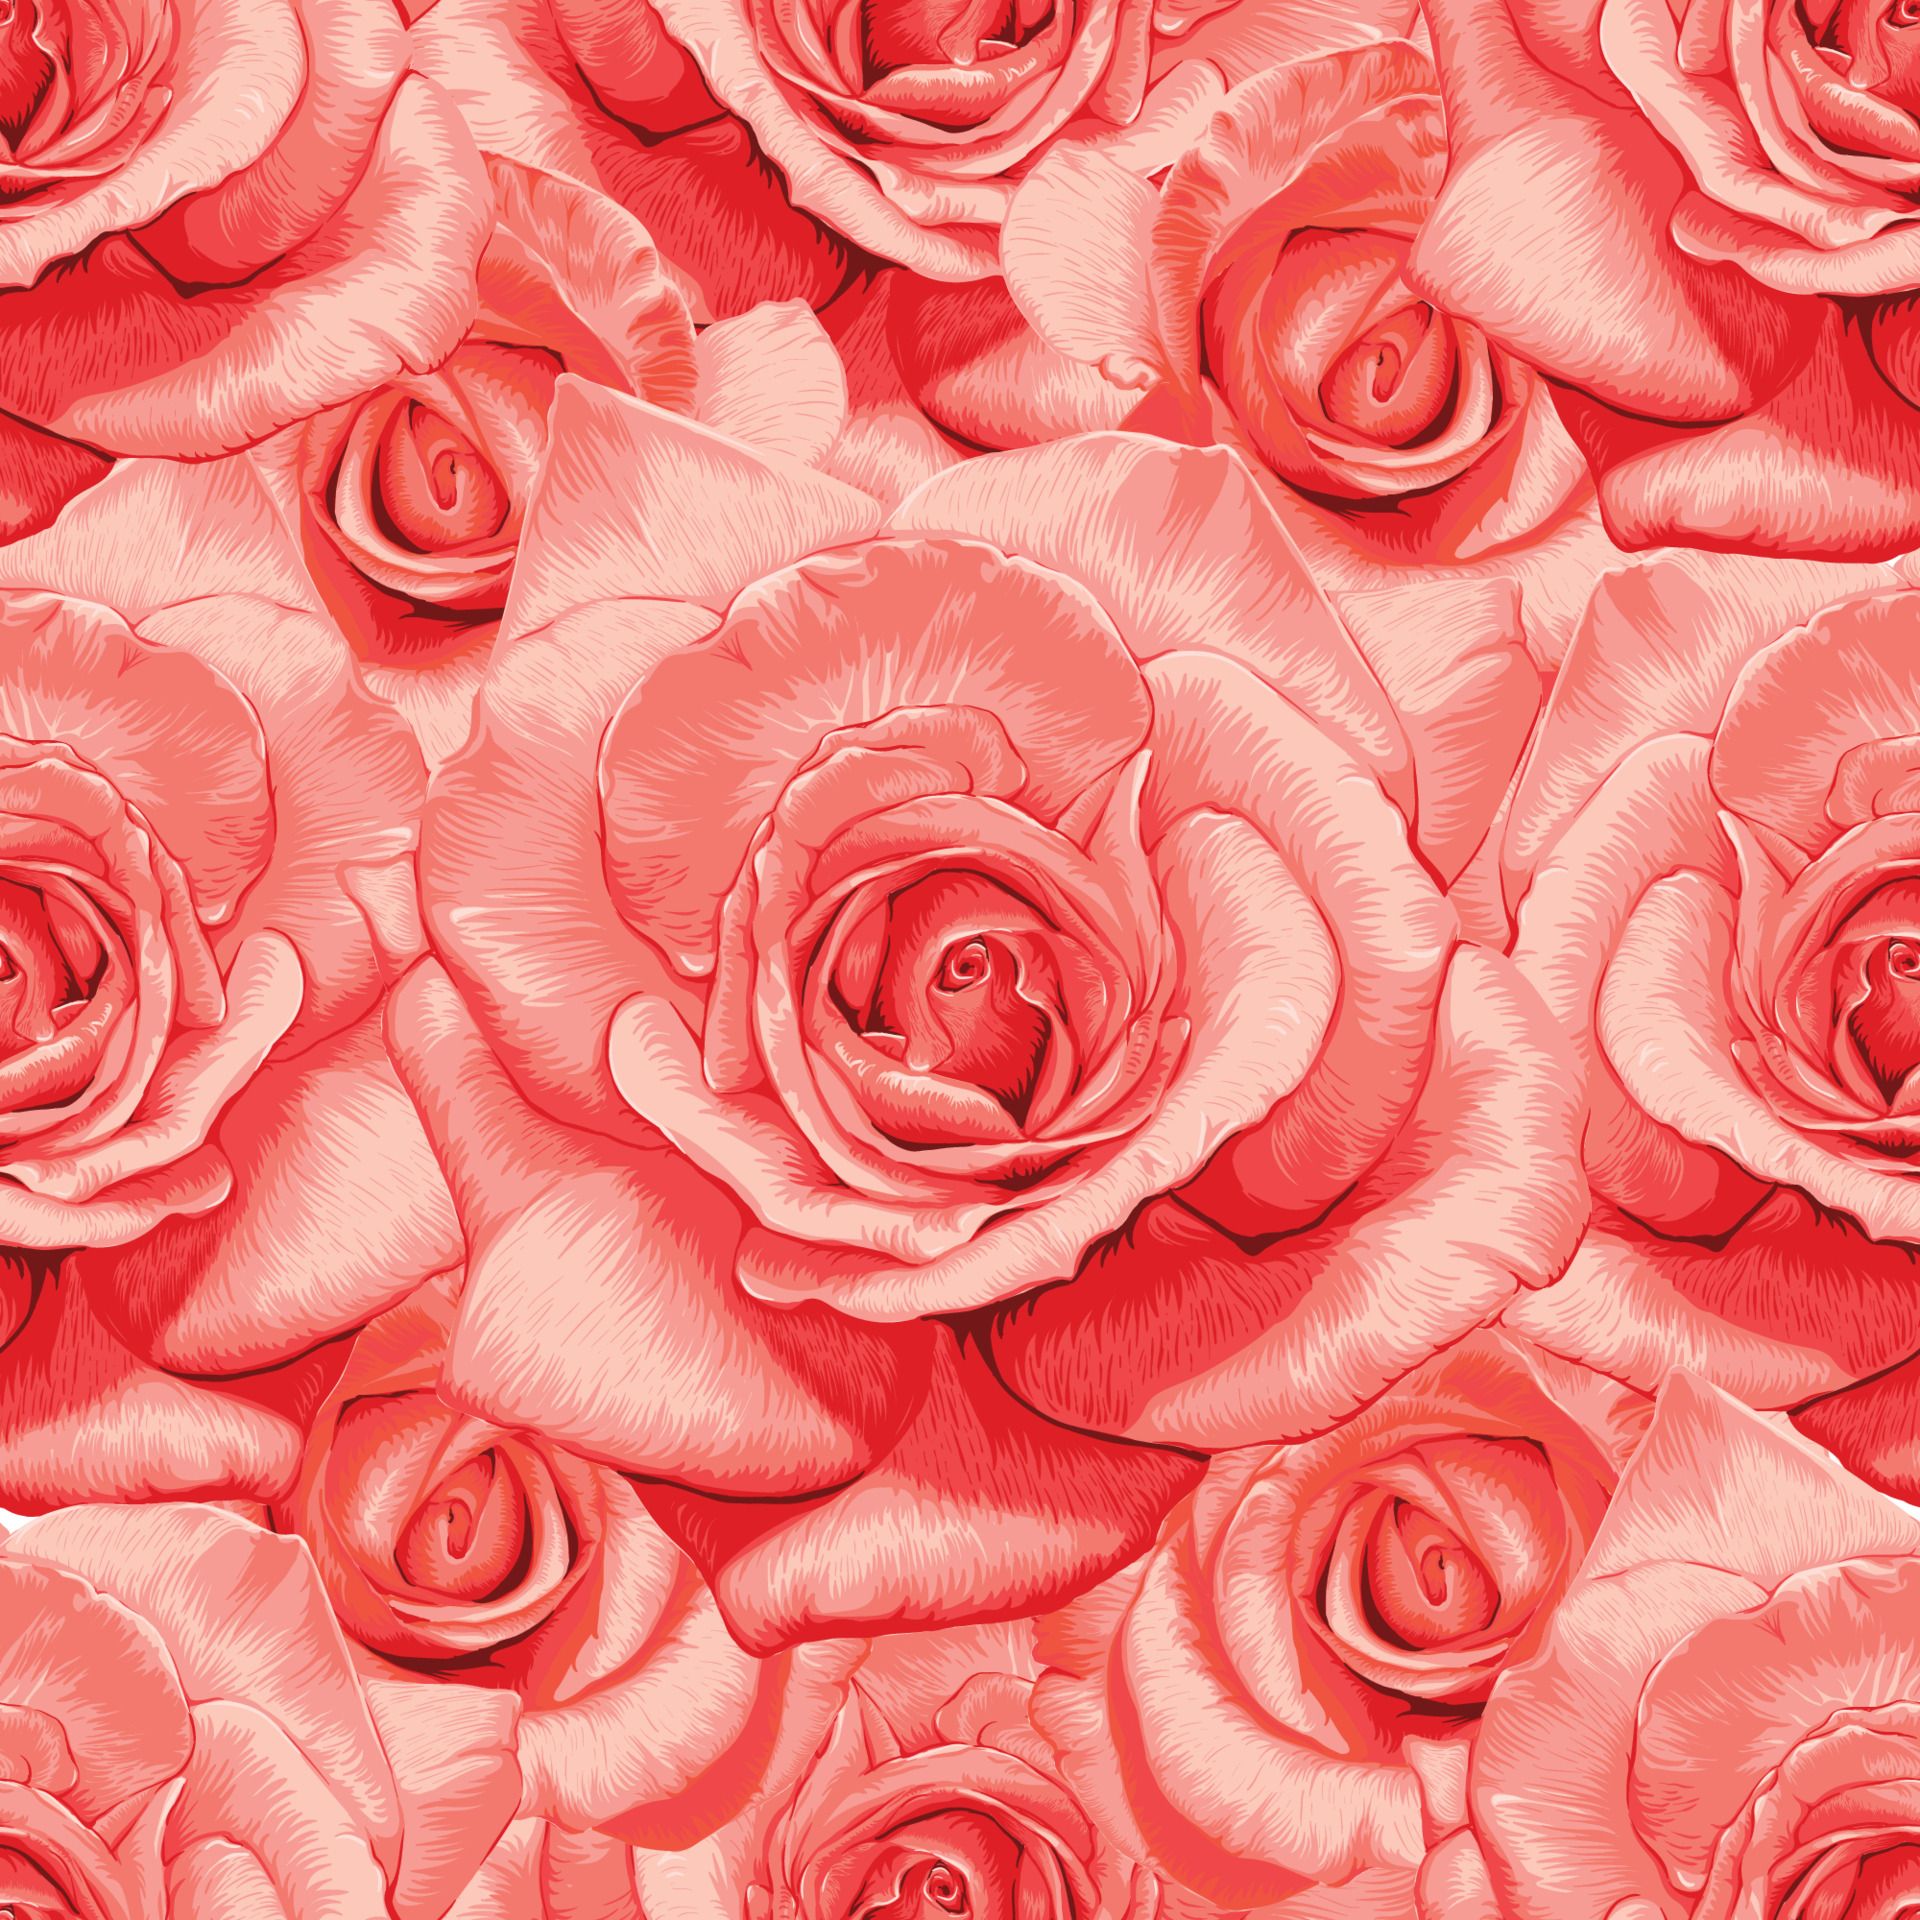  Blumen Hintergrundbild 1920x1920. nahtlose Muster floral Vintage Rose Blumen Hintergrund. 3591983 Vektor Kunst bei Vecteezy